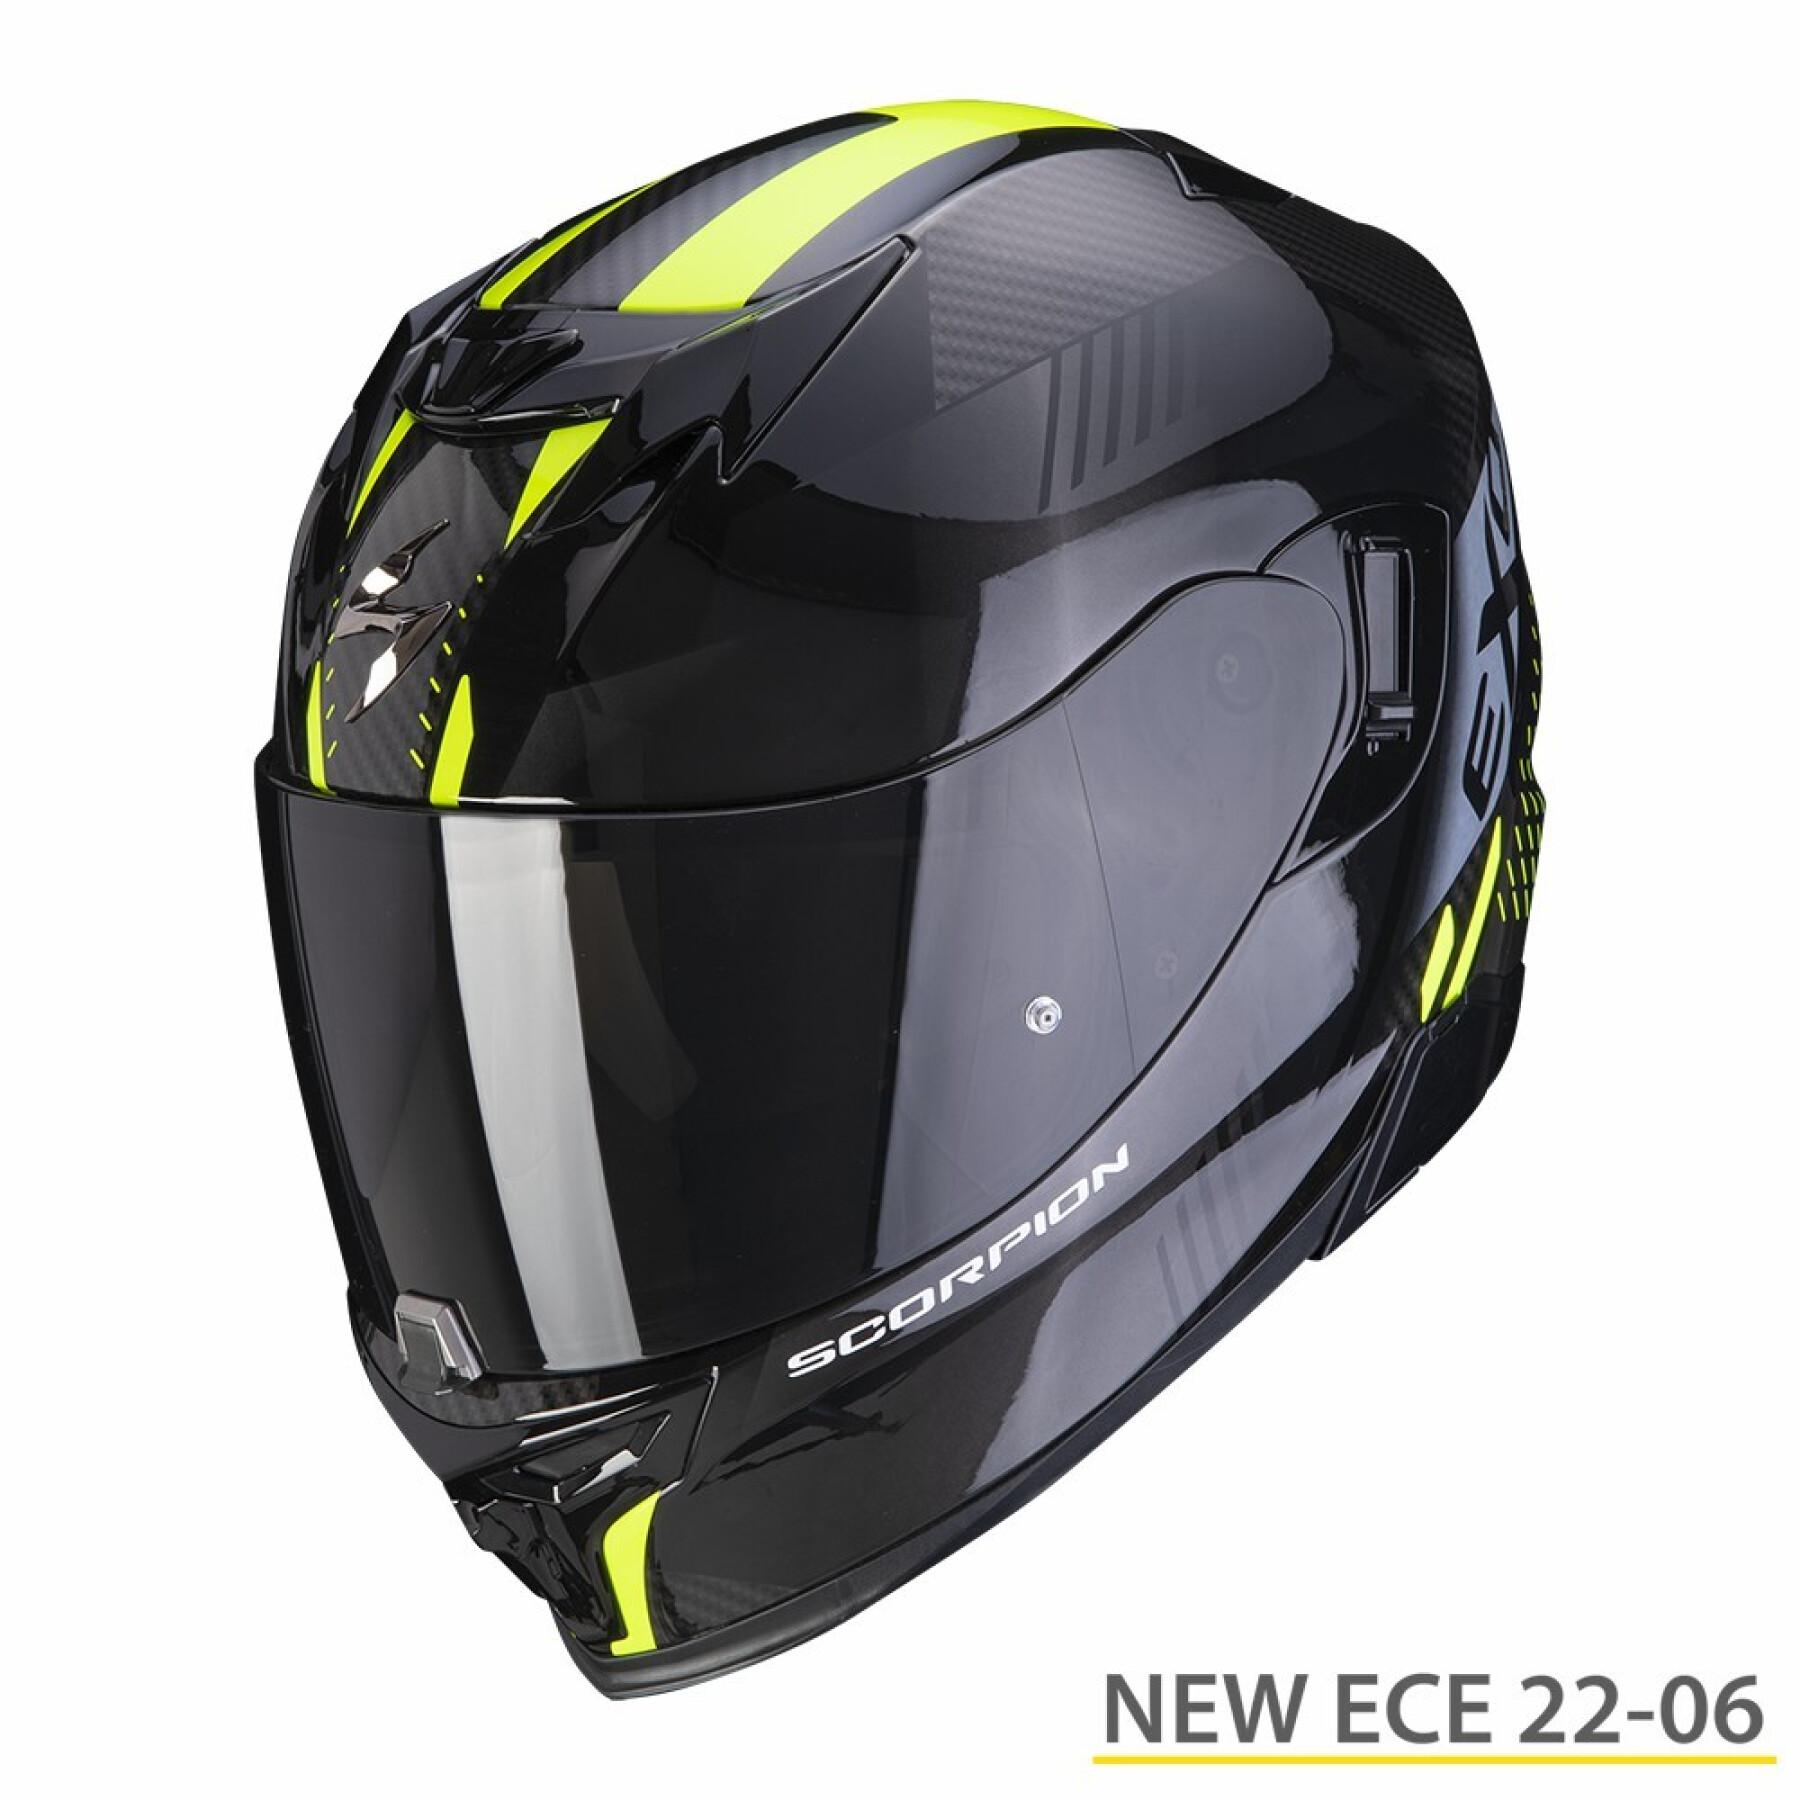 Helhjälm för motorcykel Scorpion Exo-520 Evo Air Laten ECE 22-06